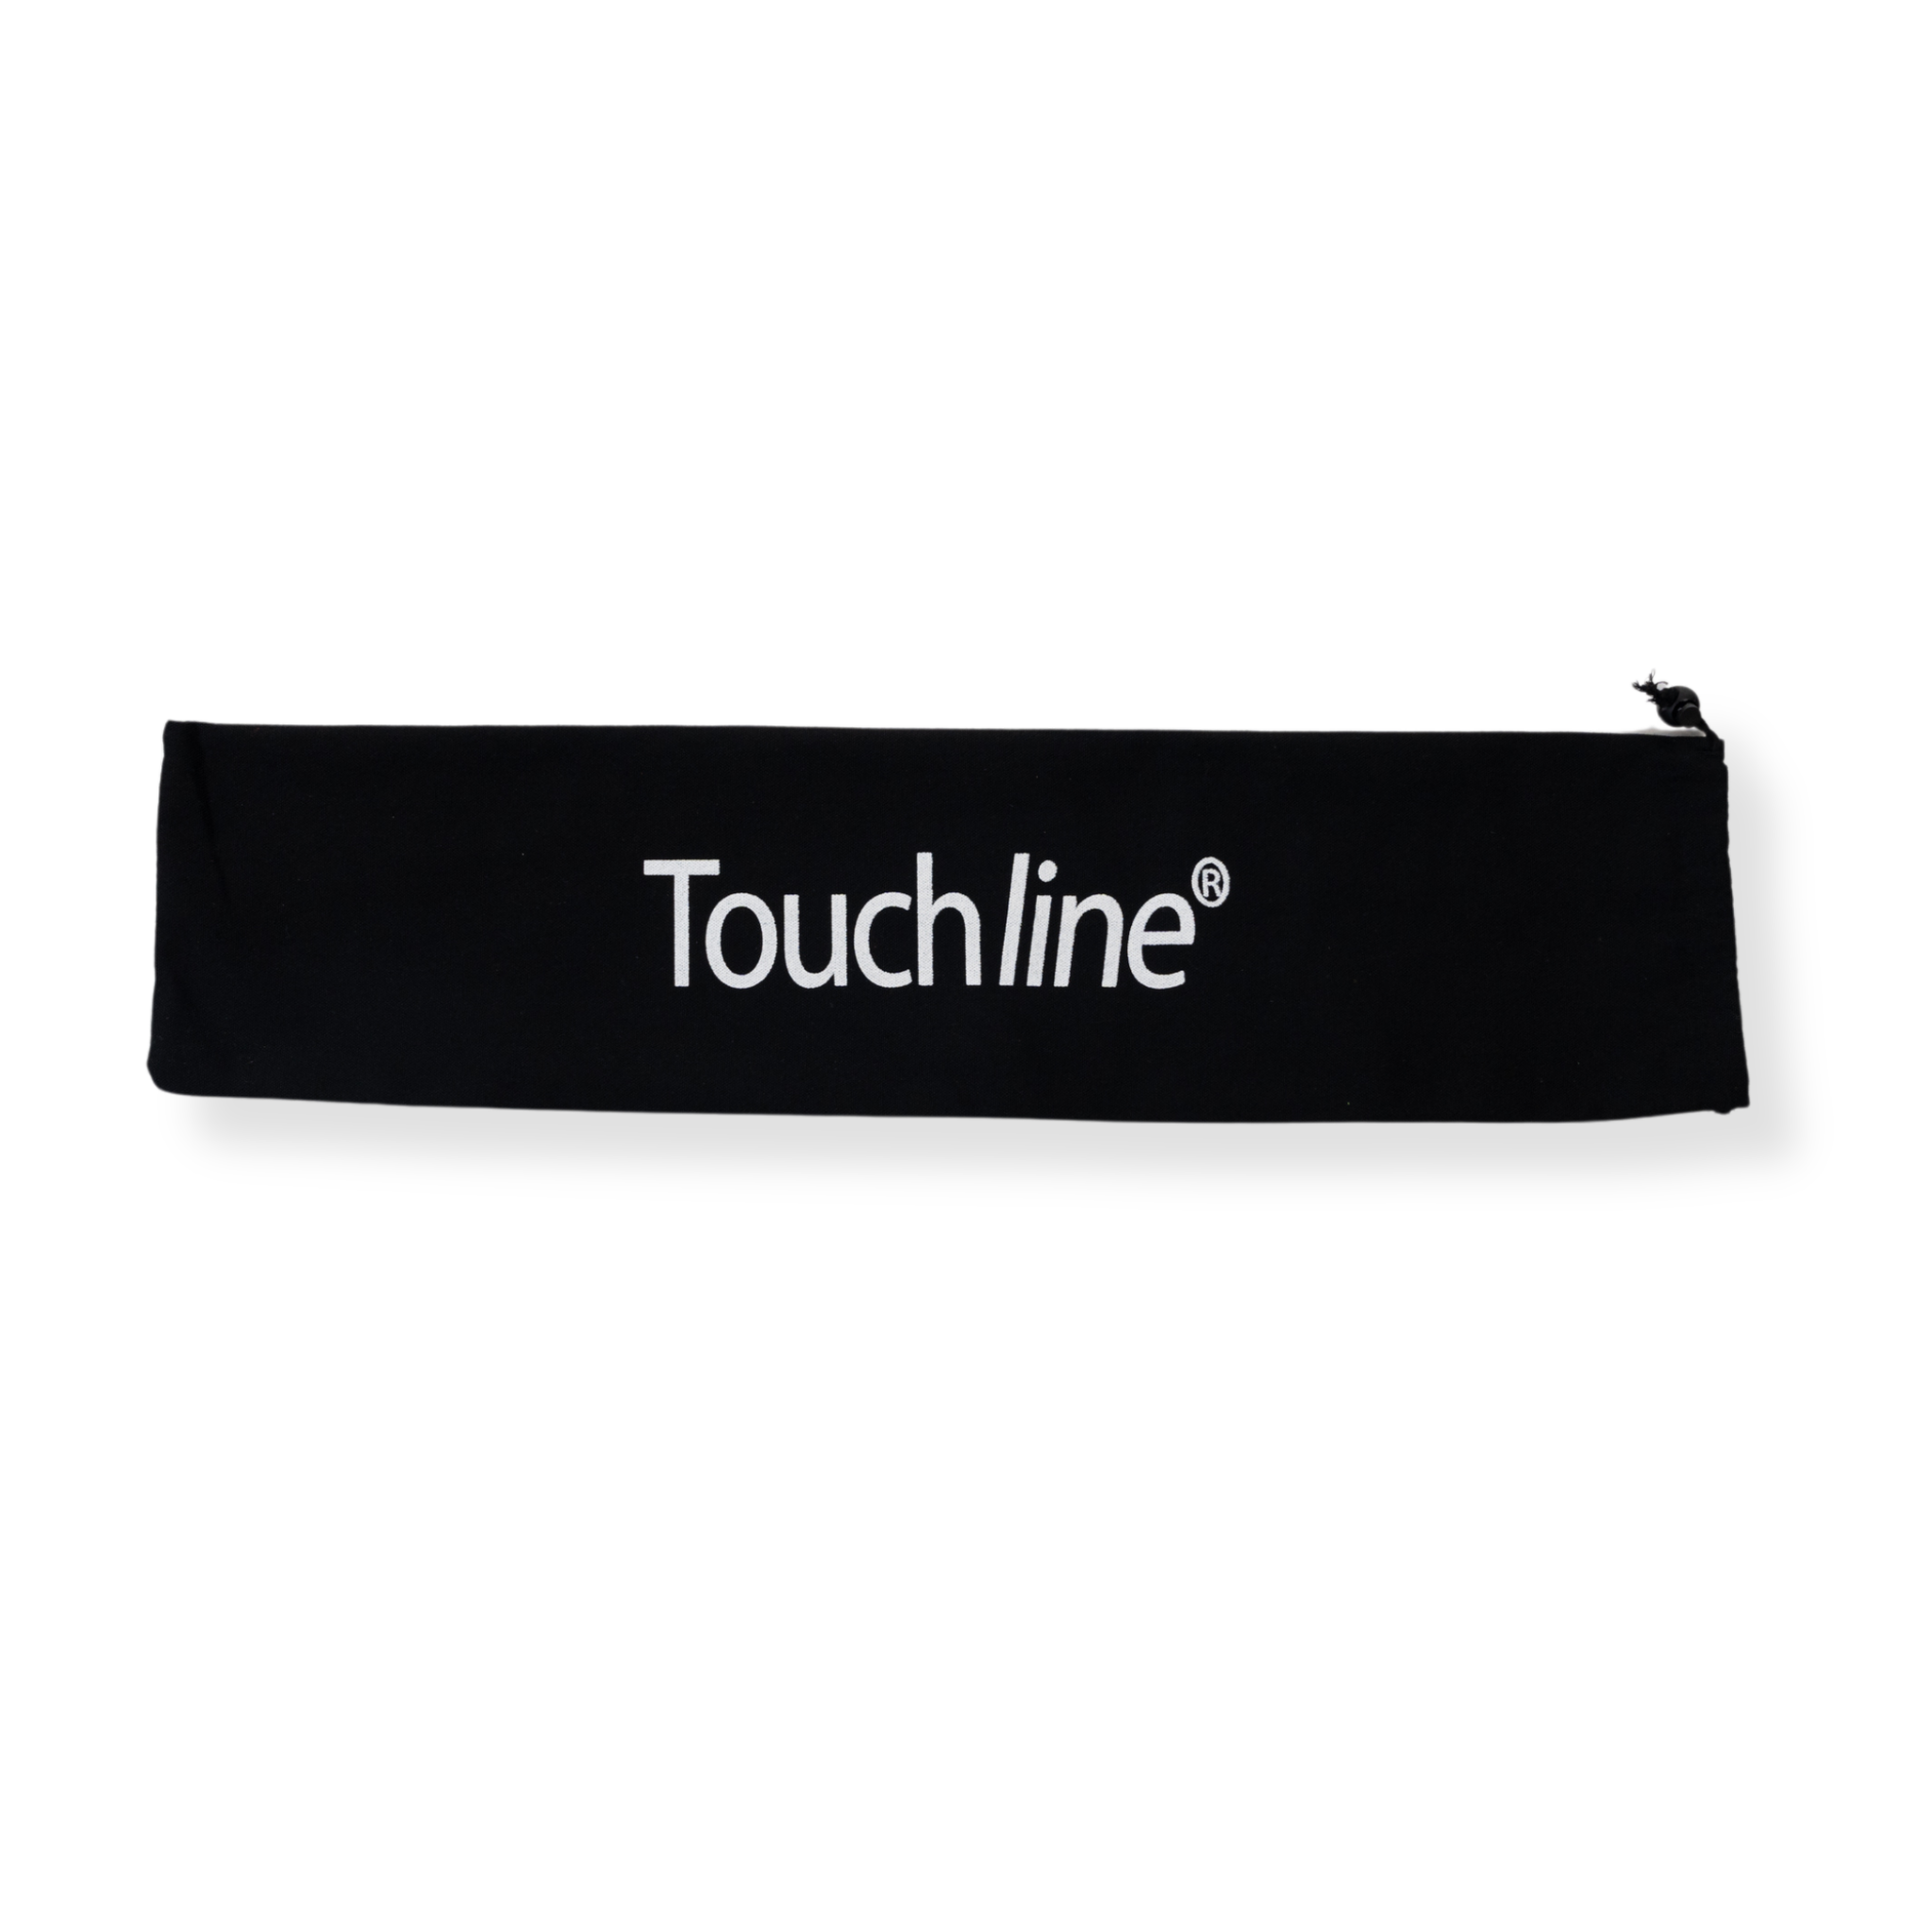 Touchline Drawstring Flag Bag